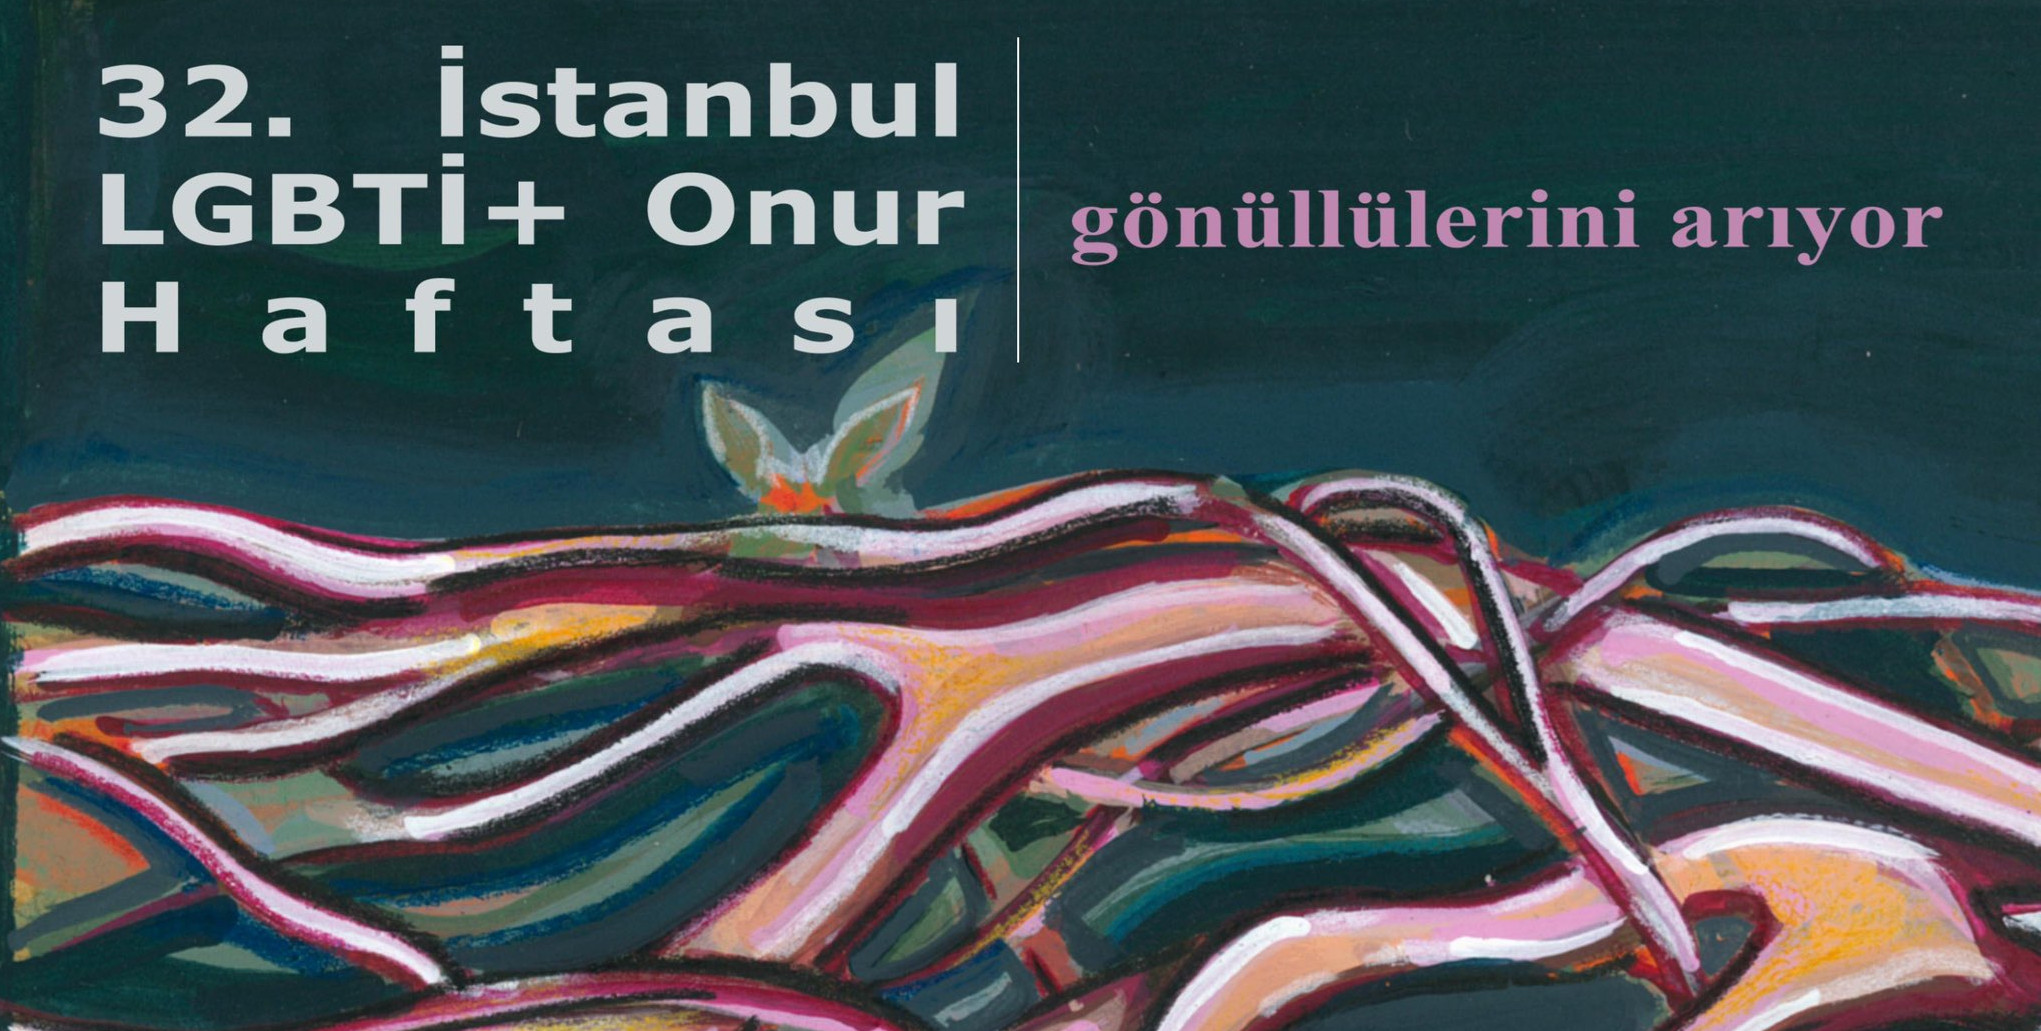 32. İstanbul LGBTİ+ Onur Haftası gönüllü toplantısı çevrimiçi | Kaos GL - LGBTİ+ Haber Portalı Haber